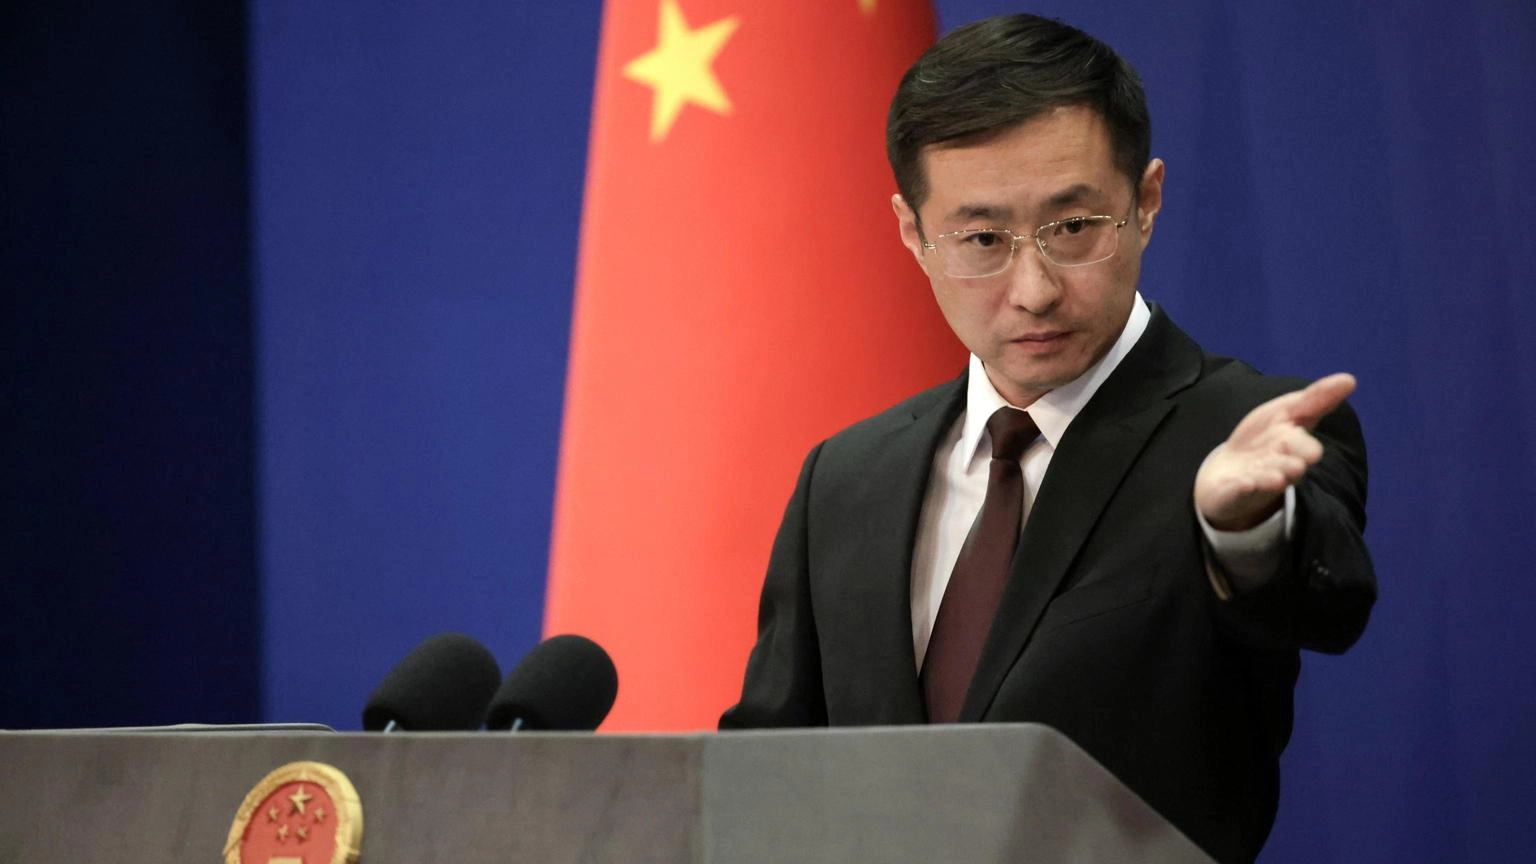 La Cina sostiene la nuova risoluzione Onu su cessate fuoco